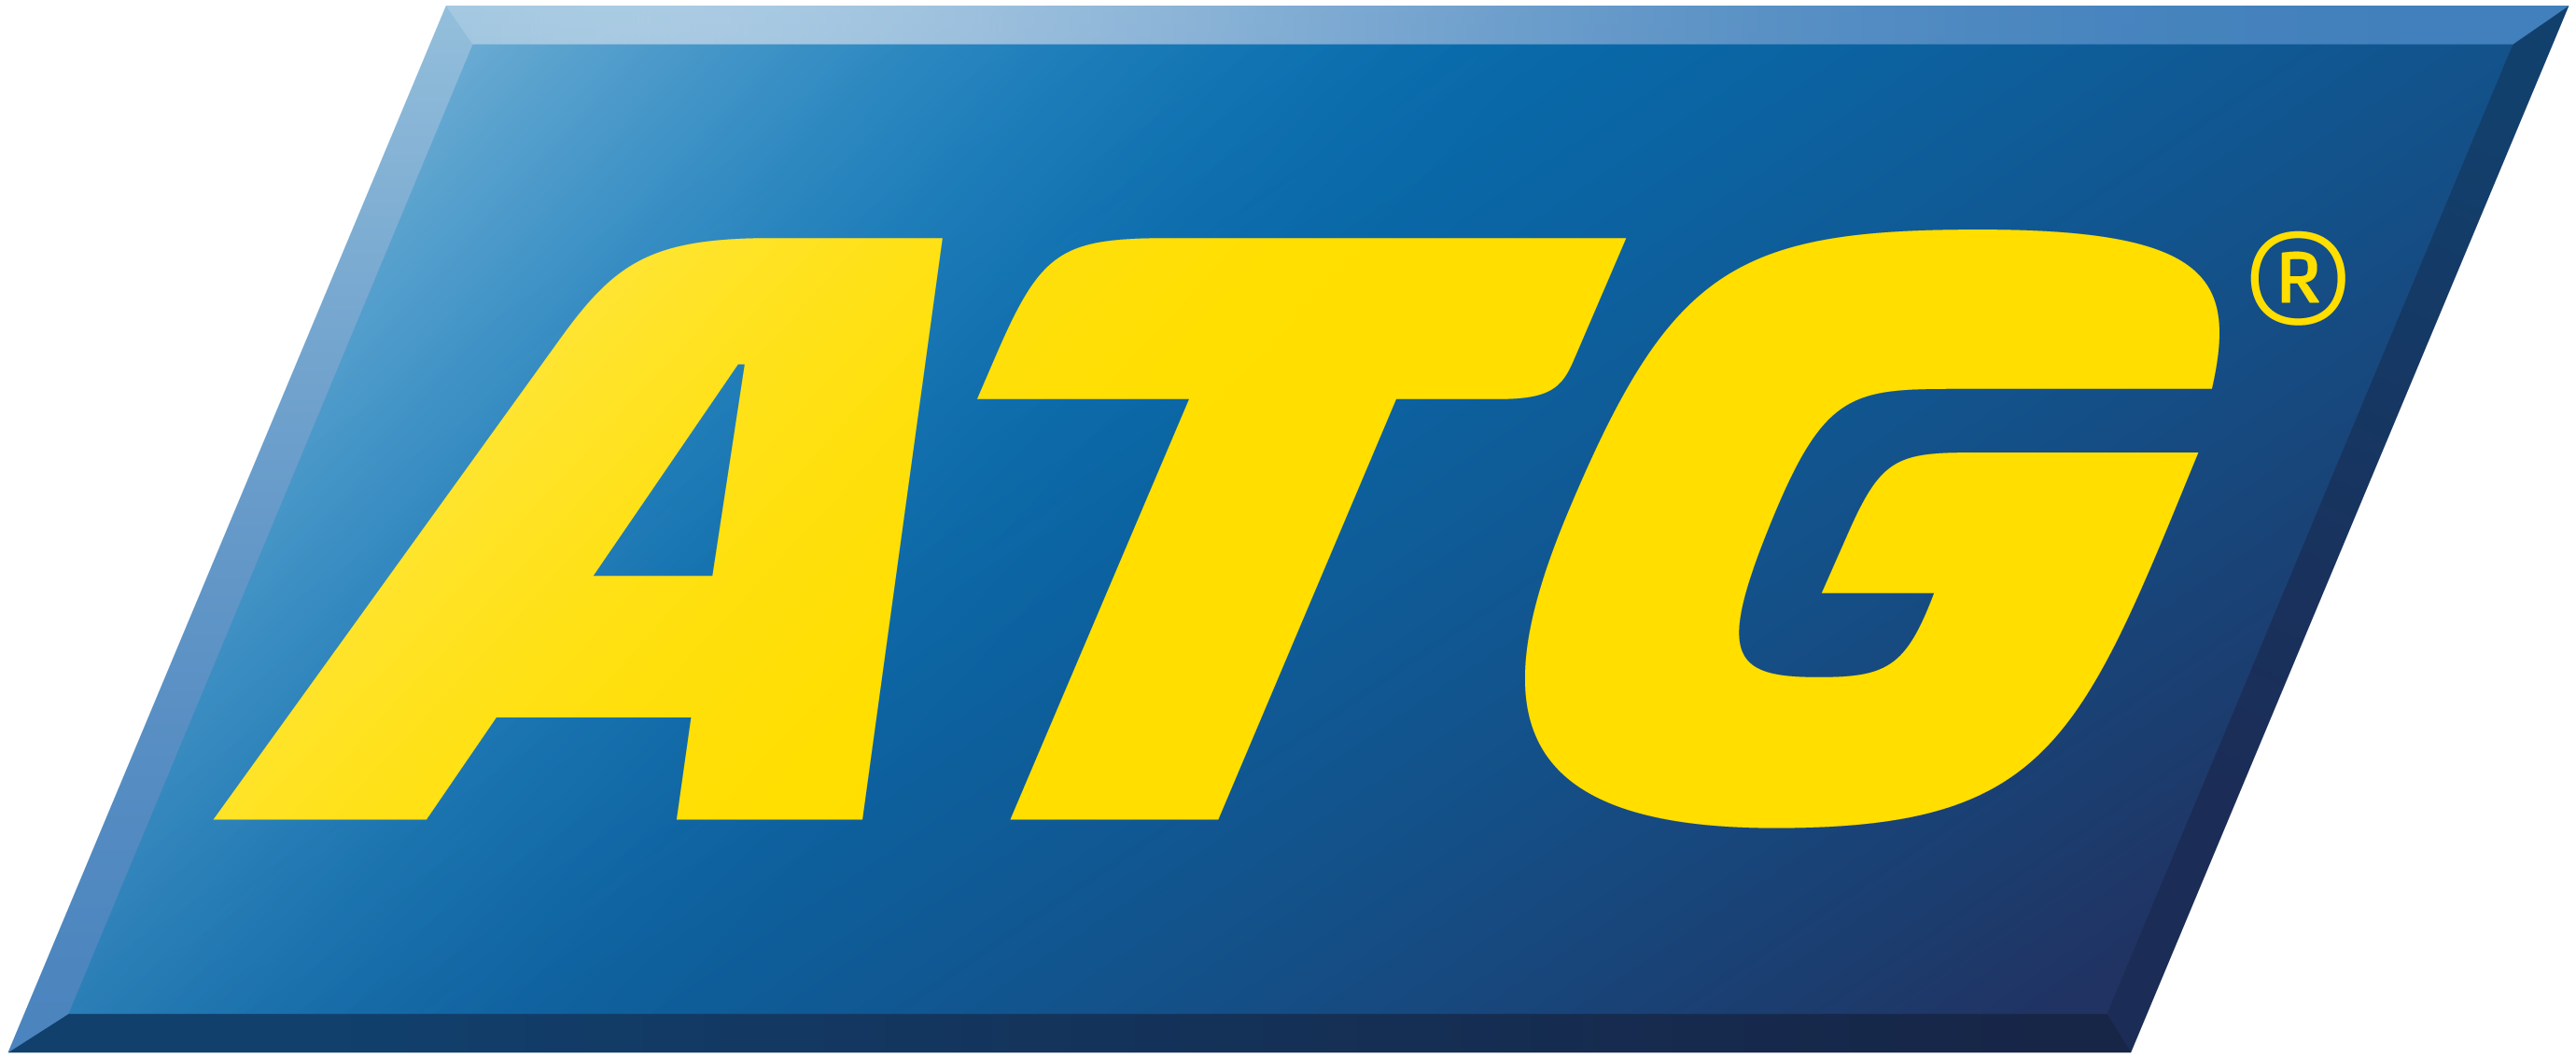 ATG logotyp